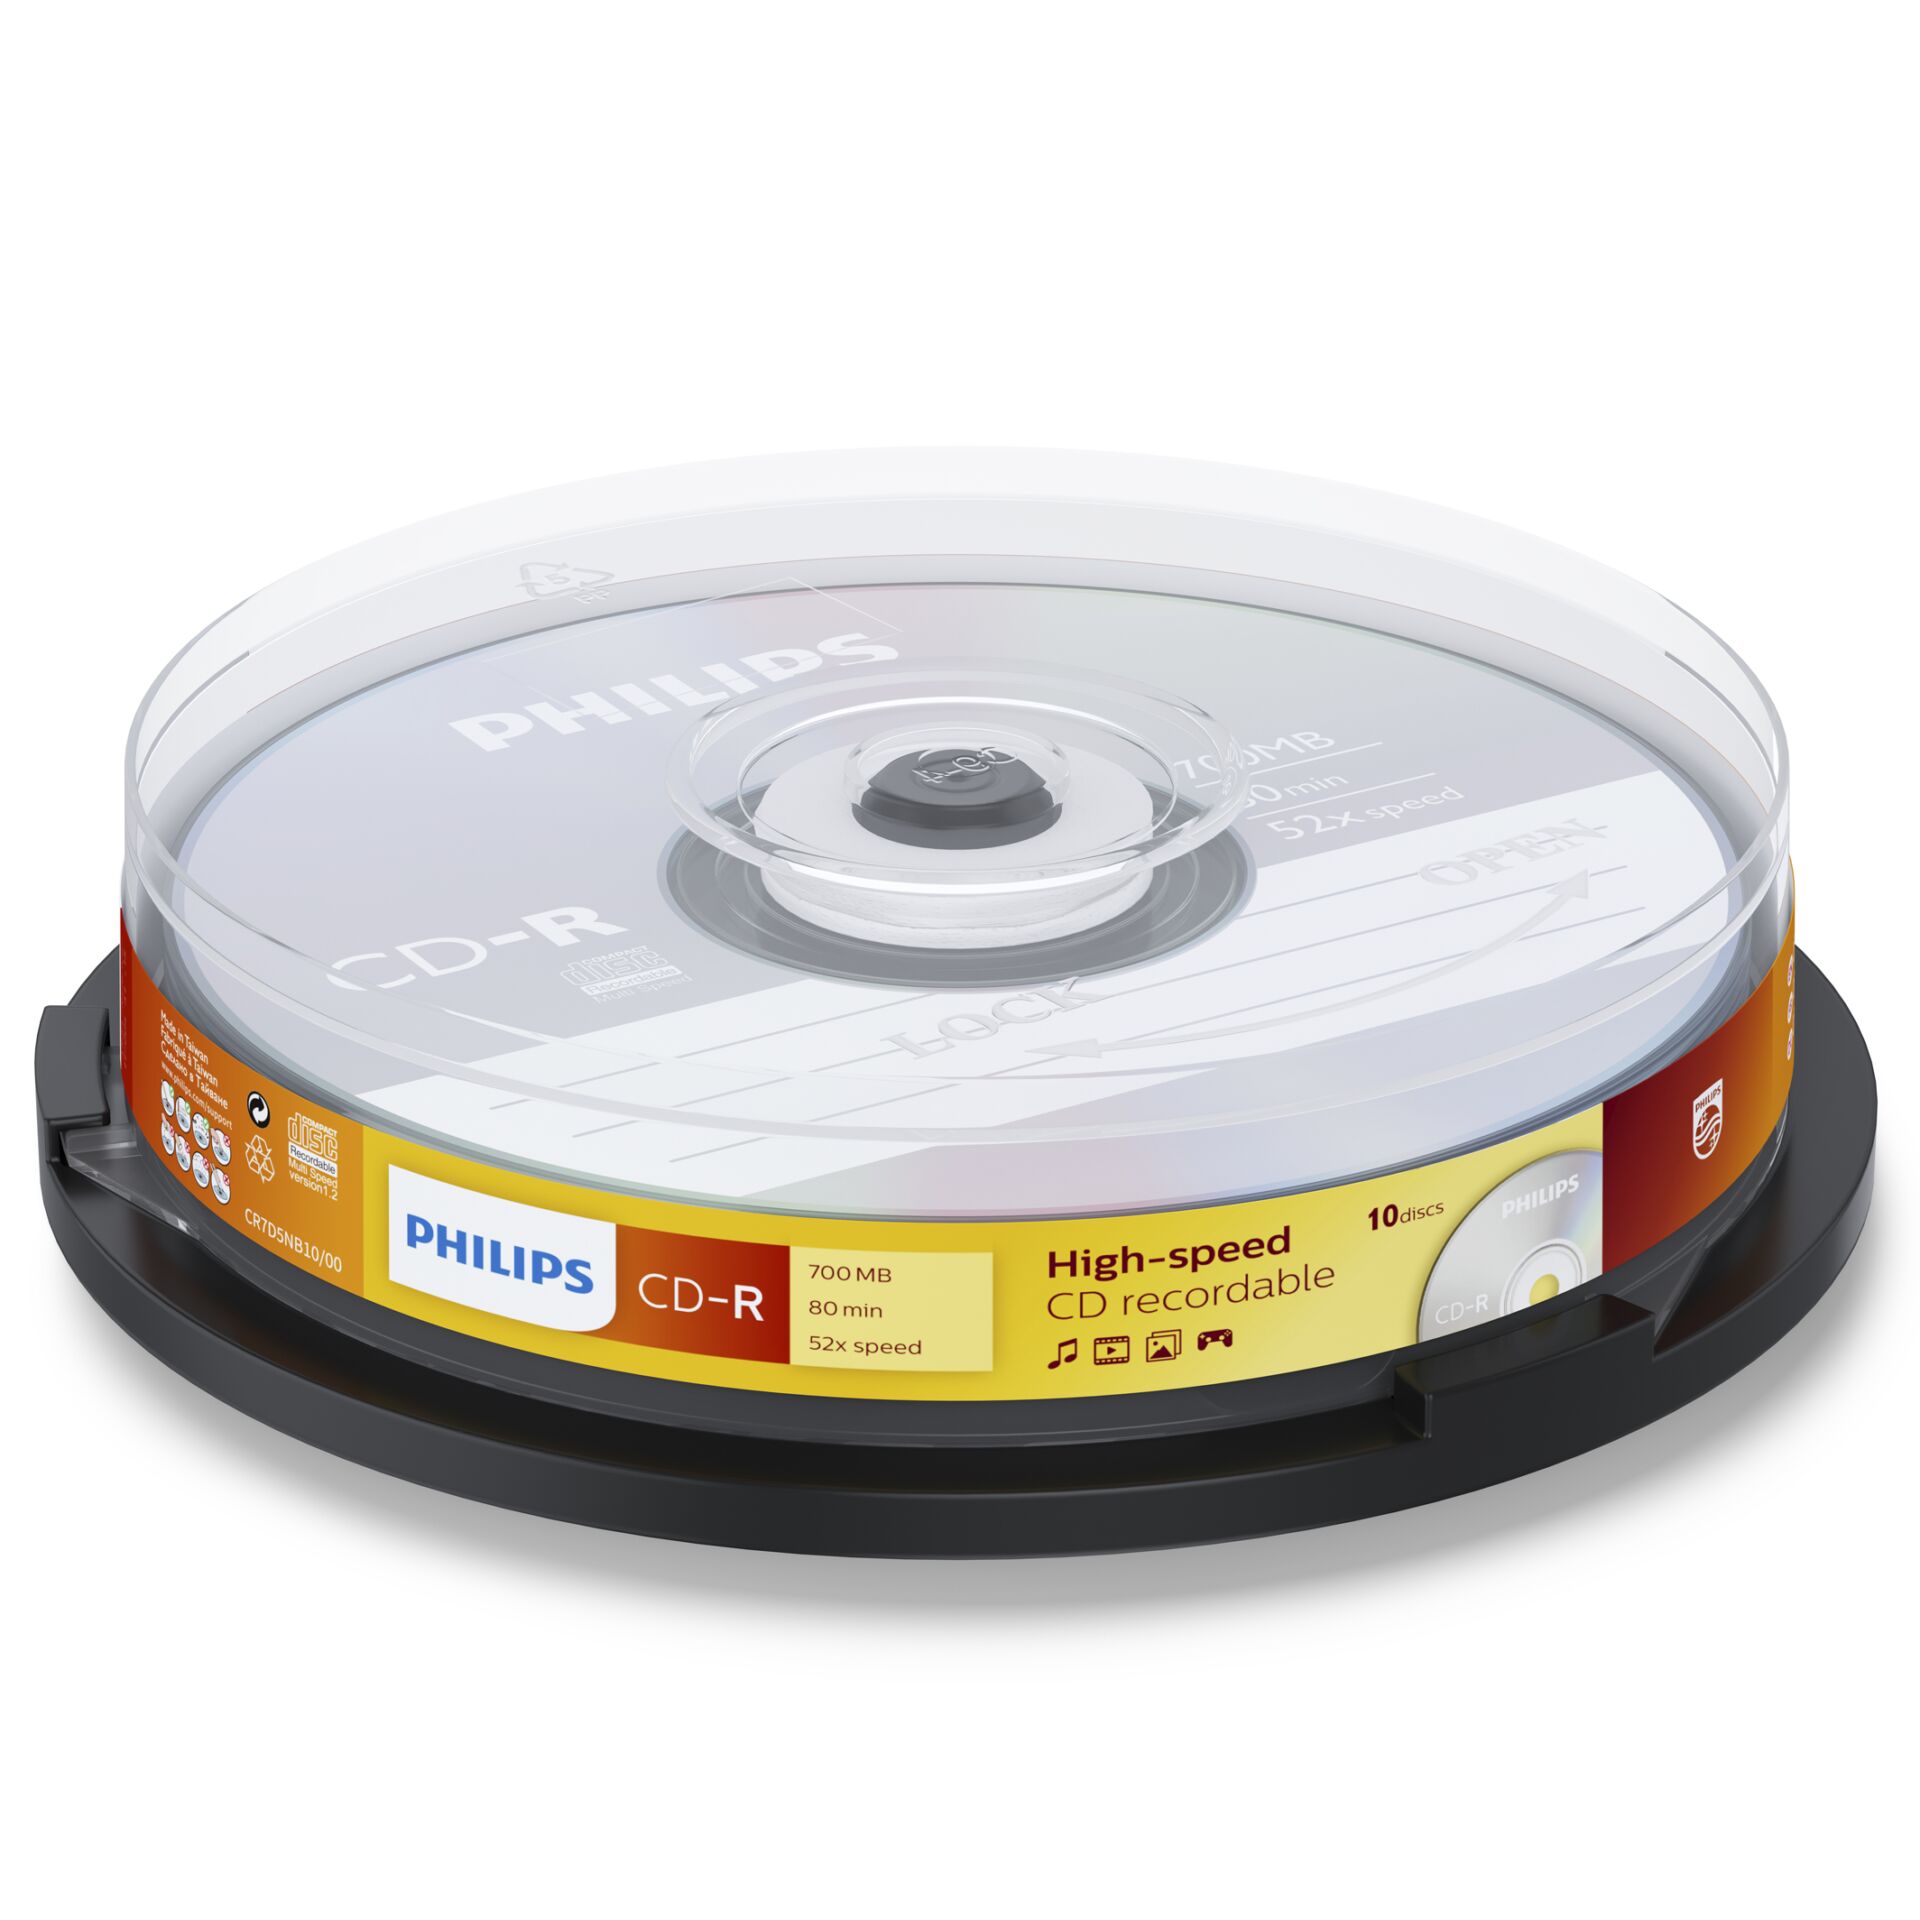 Philips CD-R 80min/700MB, 10er Spindel 